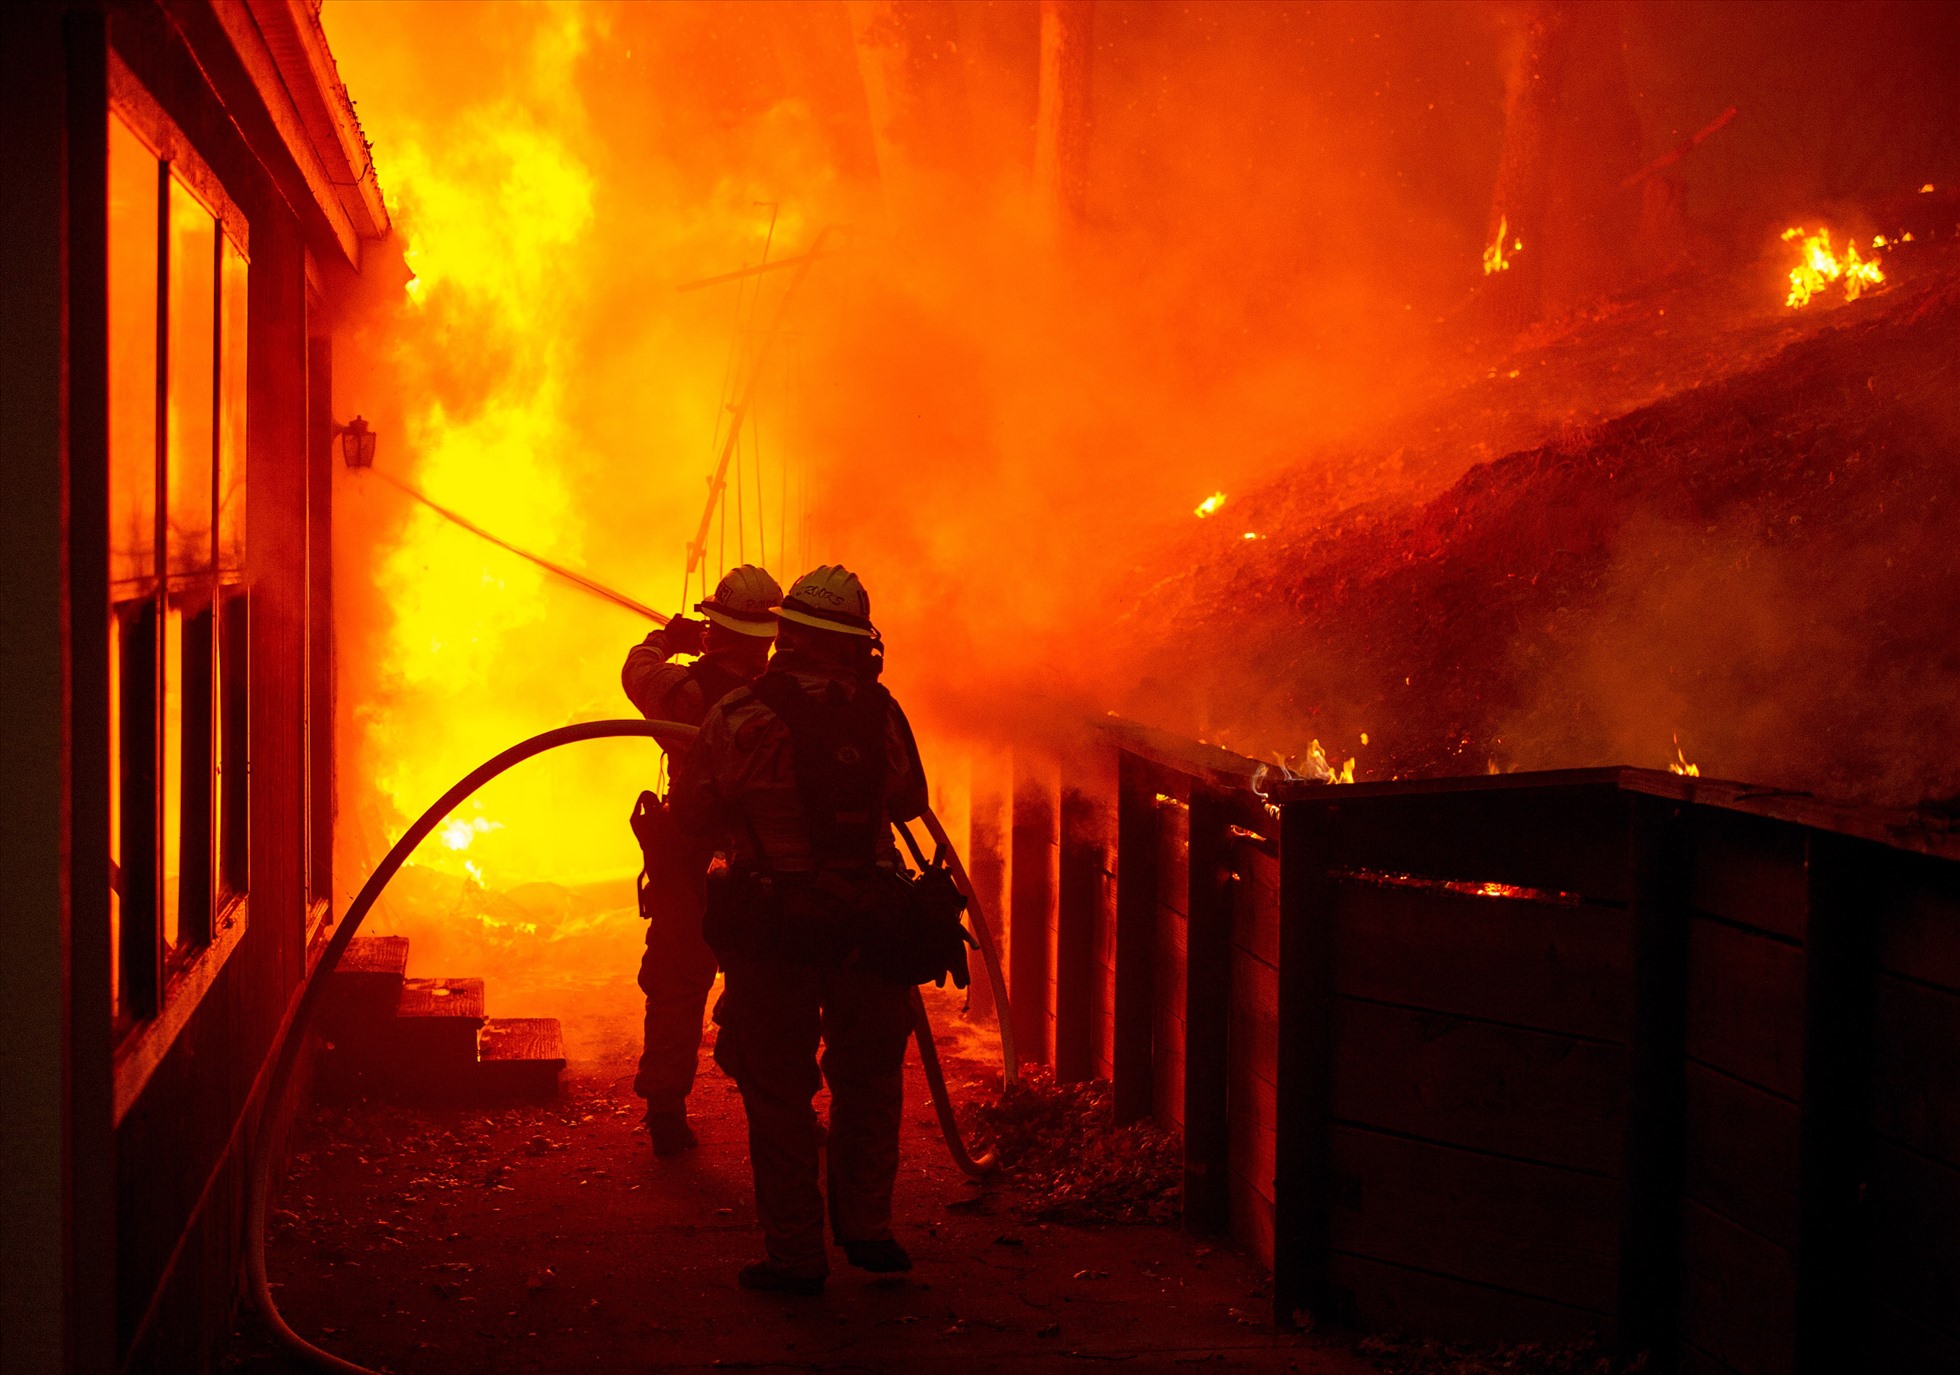 Tầng thượng tiềm ẩn nhiều nguy hiểm, hoàn toàn không phải là nơi an toàn nhất khi cháy lớn xảy ra. Ảnh: AFP.